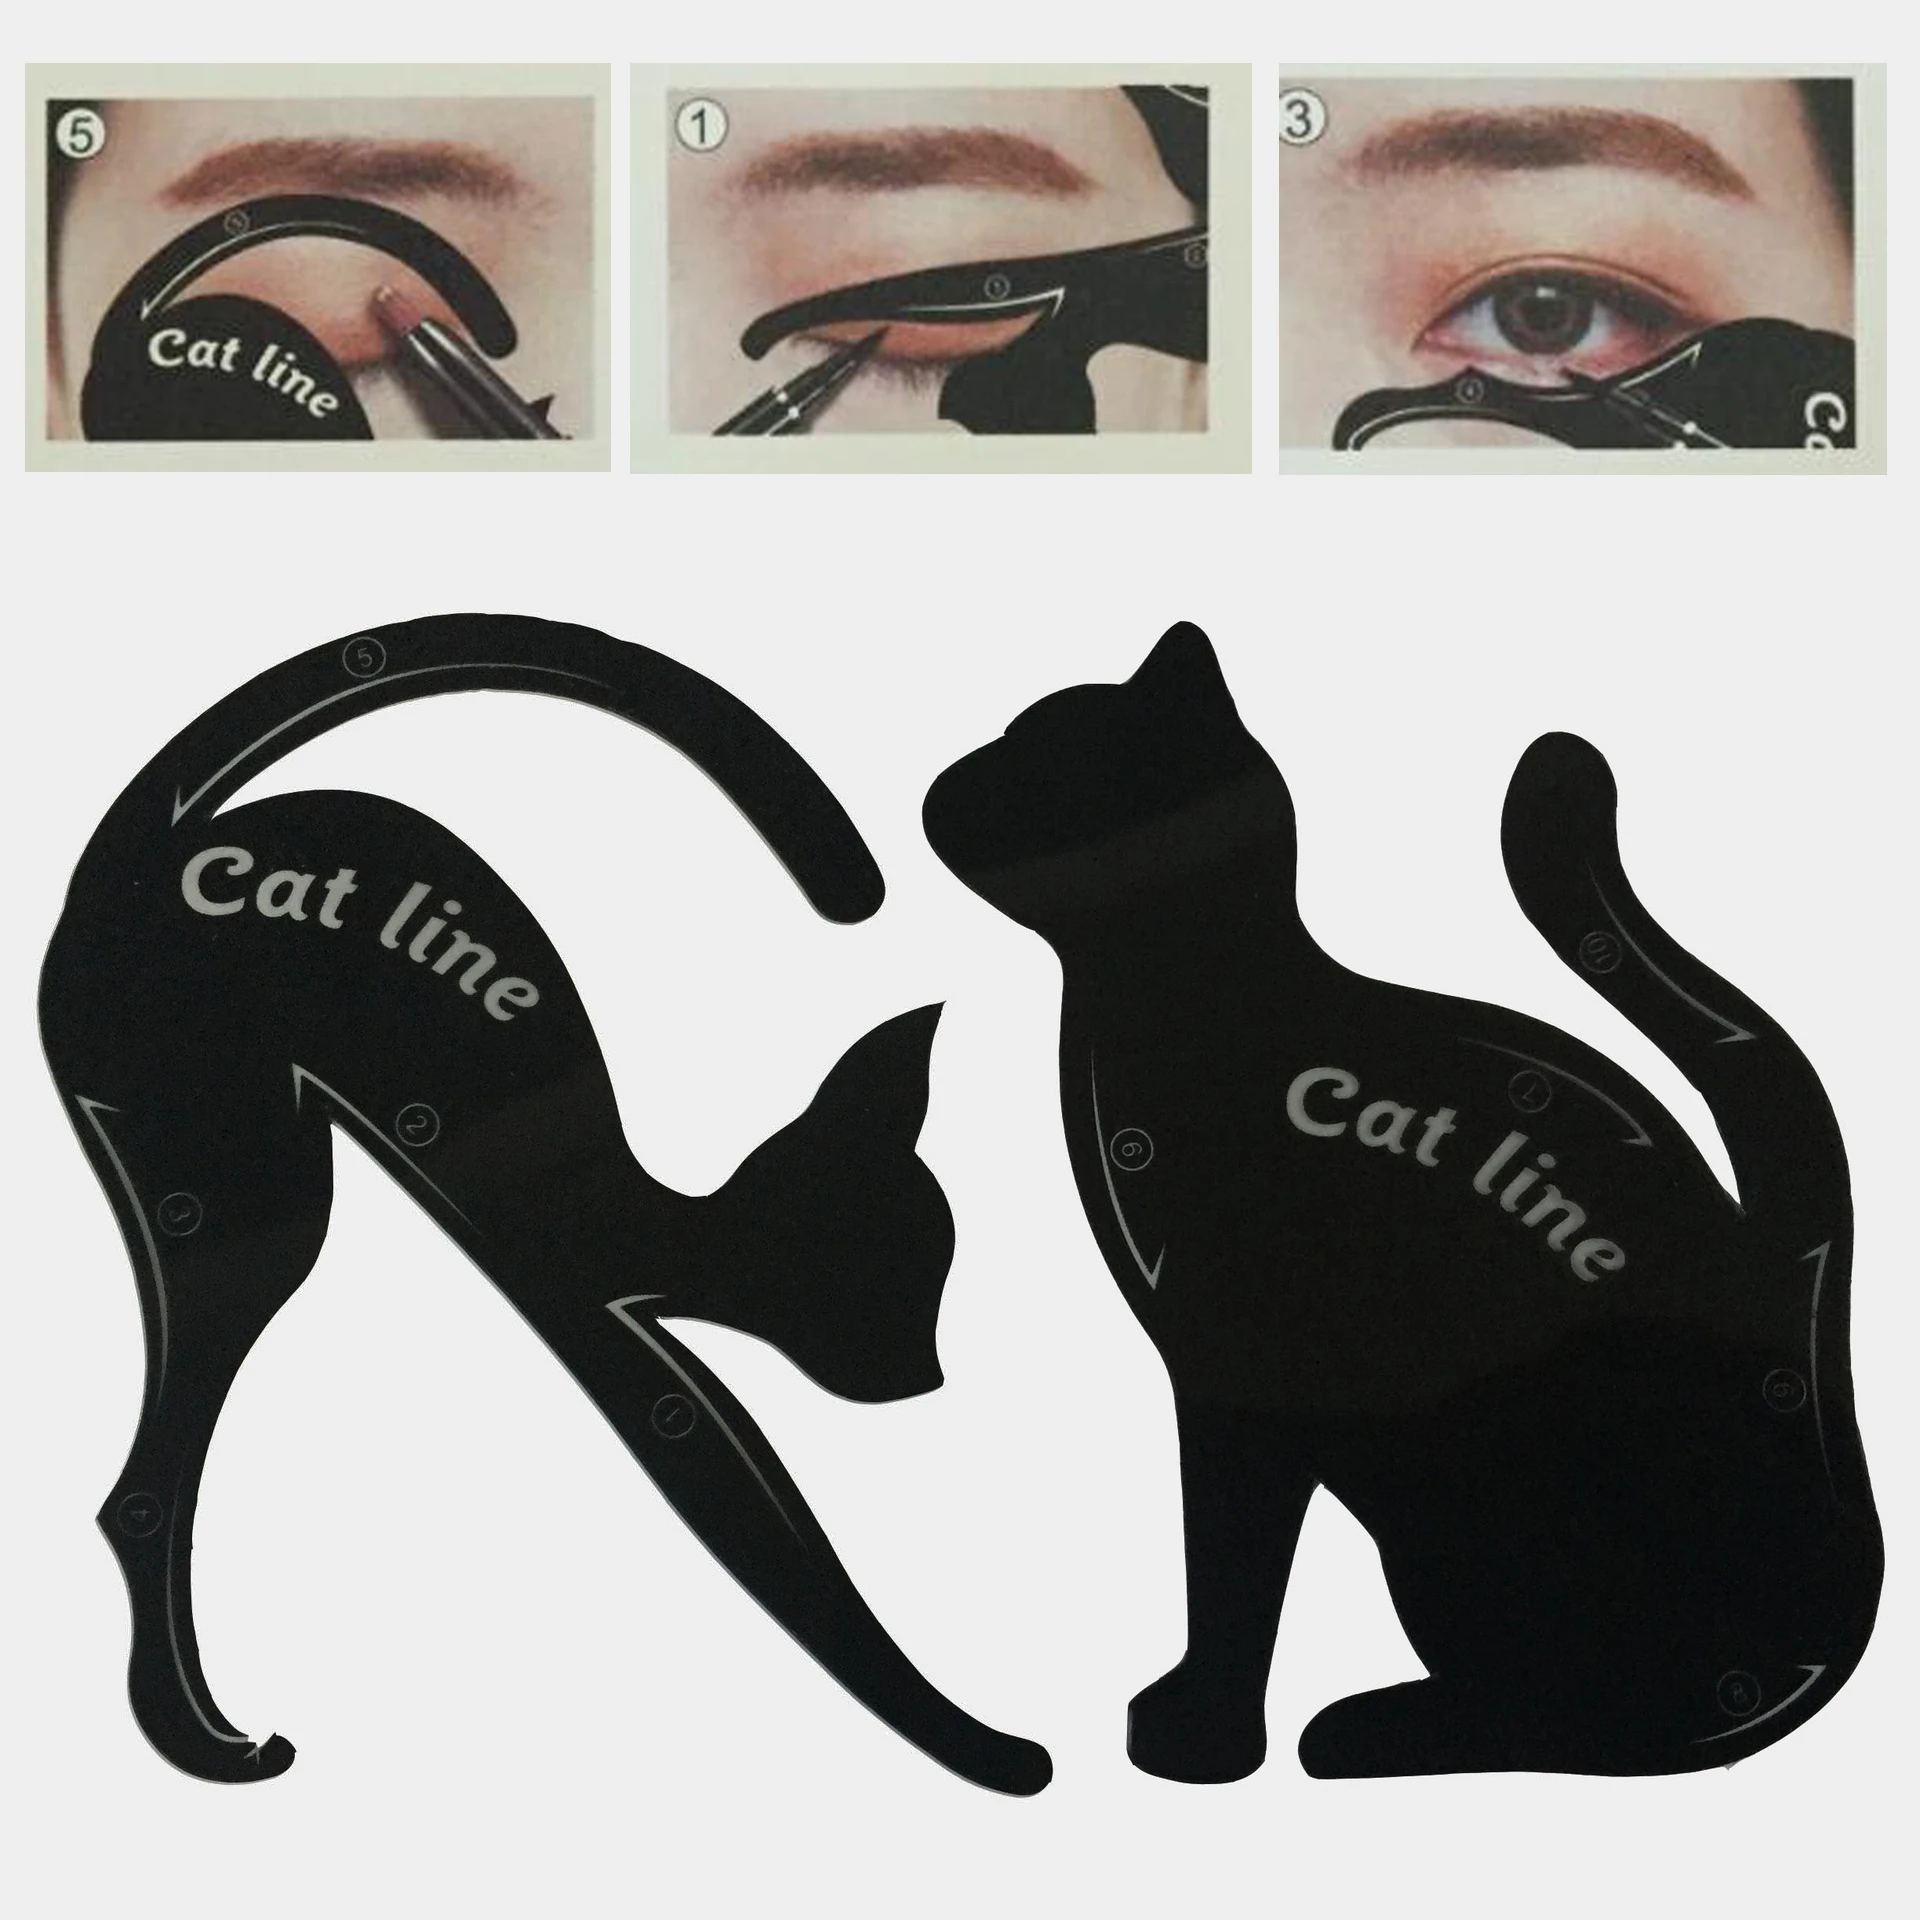 Beauty Eyebrow mold Stencils 2Pcs/Lot Women Cat Line Pro Eye Makeup Tool Eyeliner Stencils Template Shaper Model for women